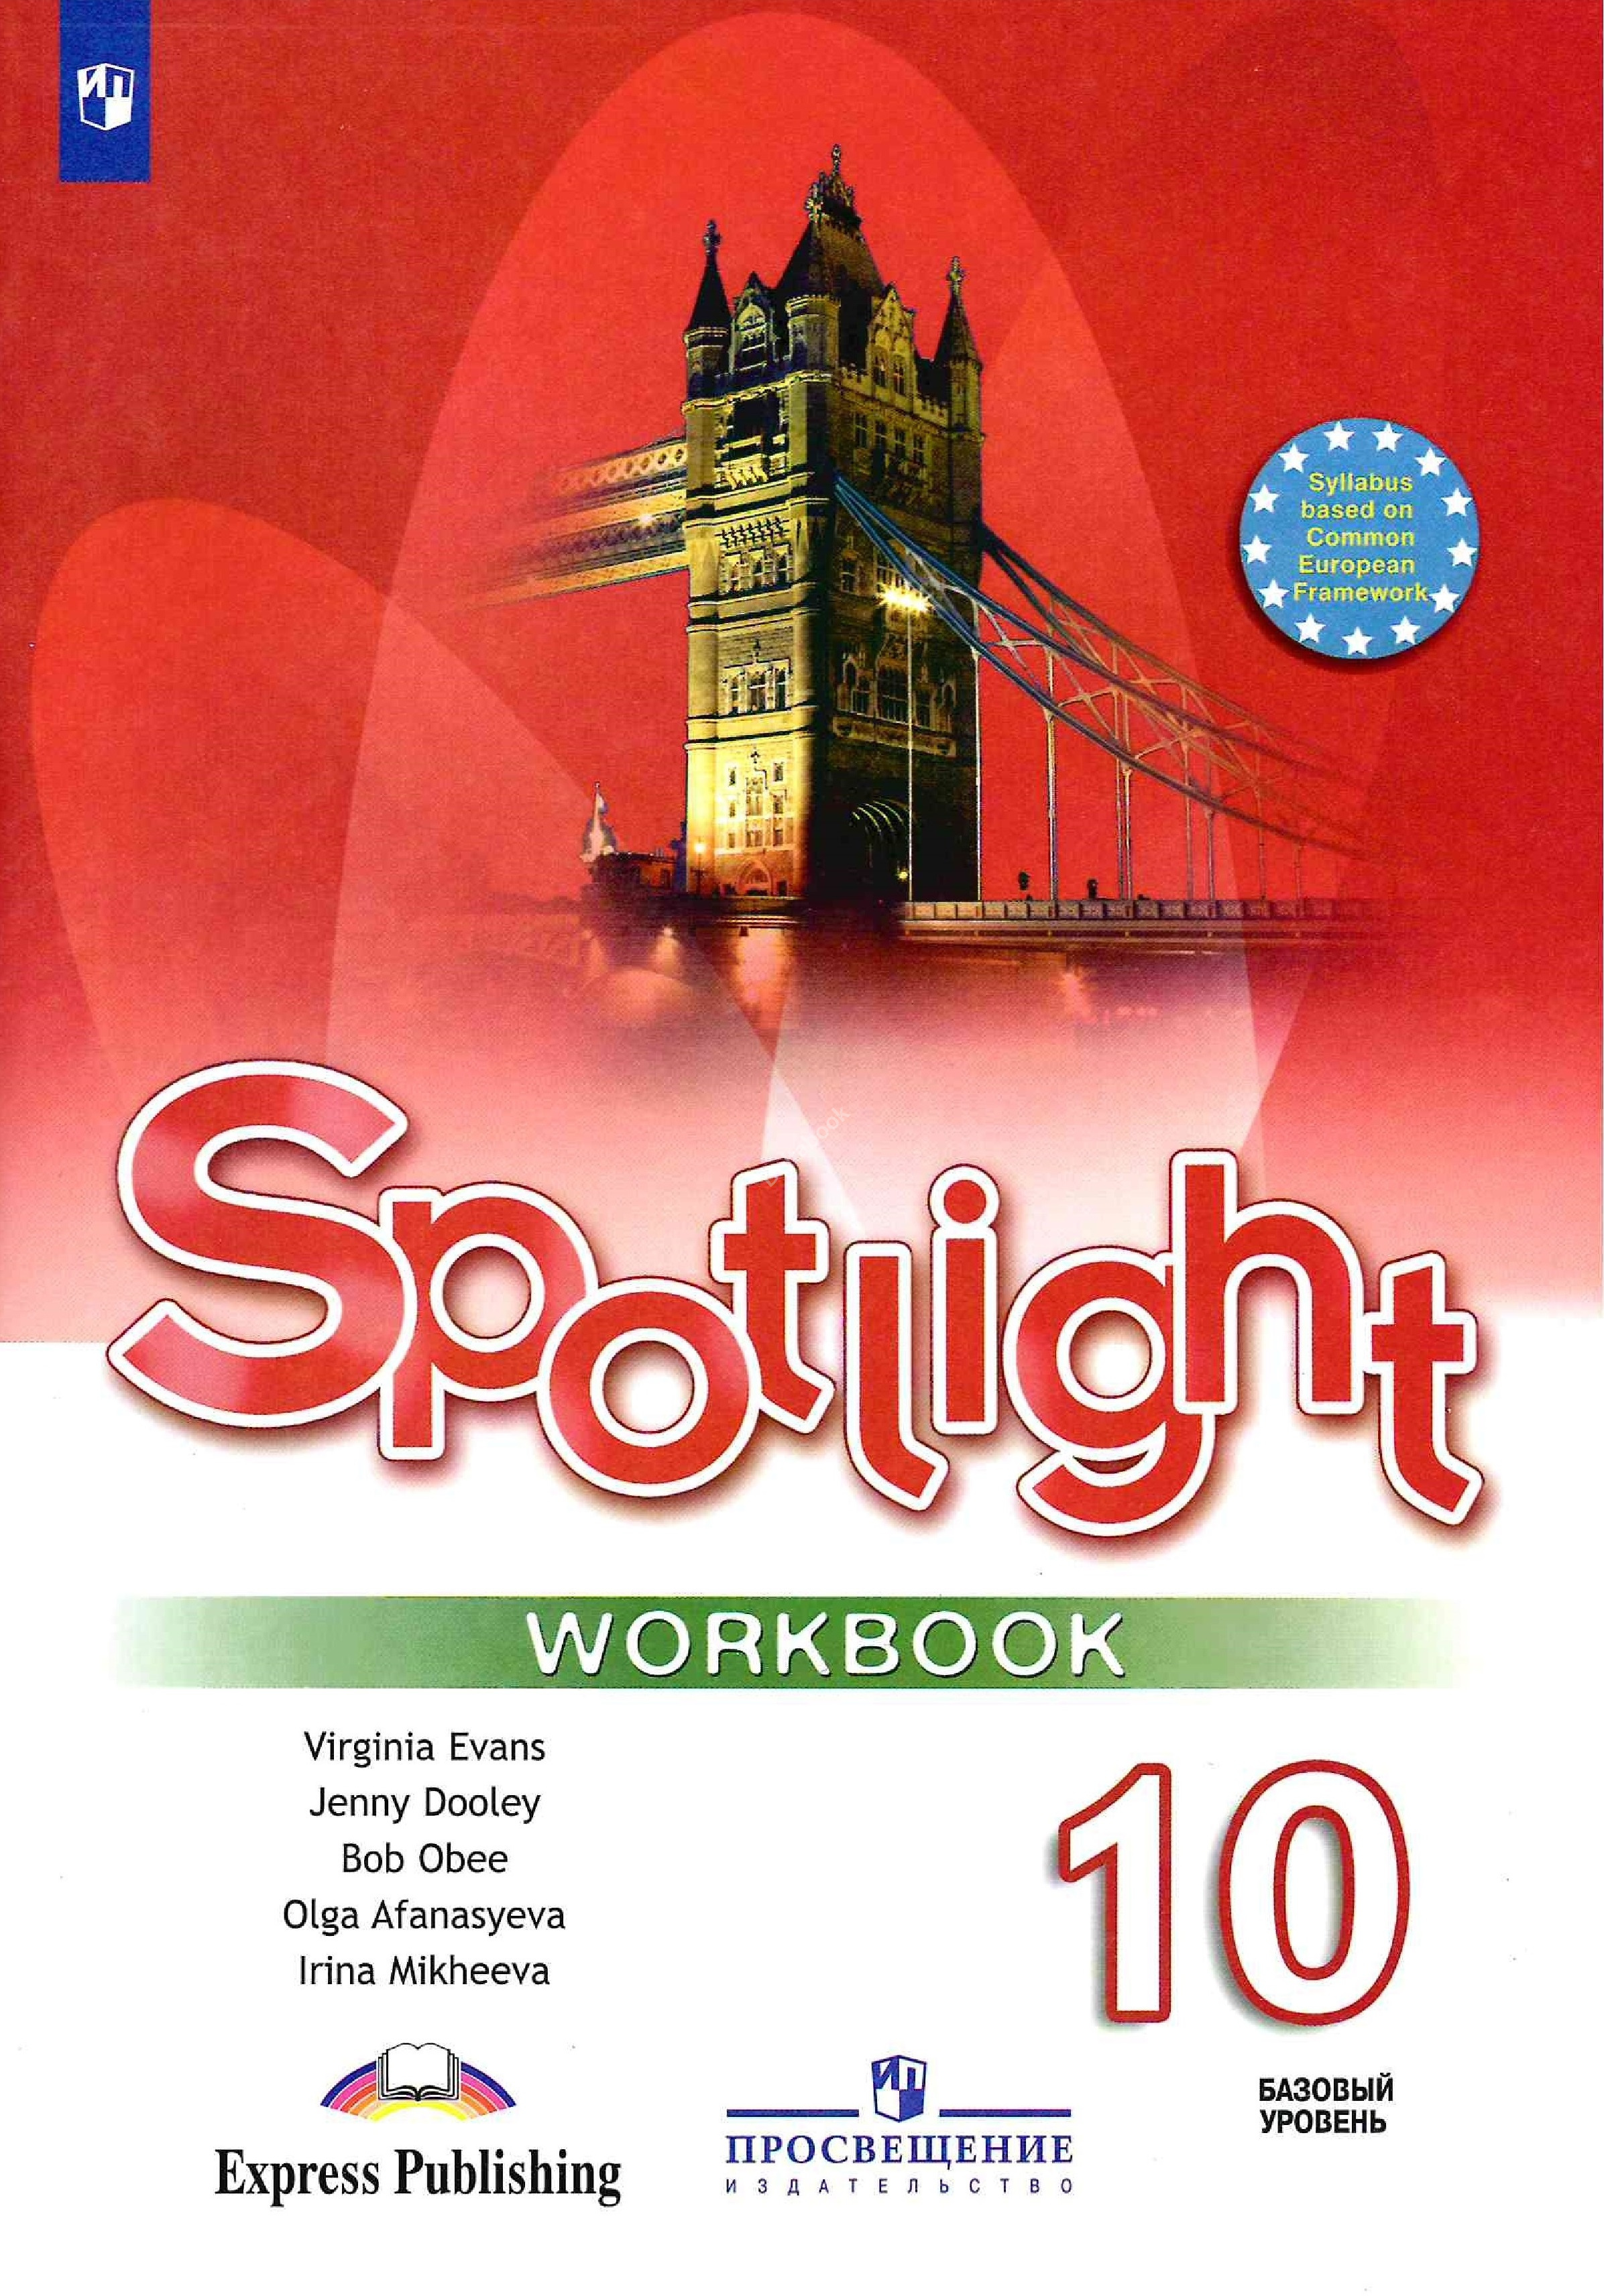 Спотлайт 10 конспекты уроков. Workbook Spotlight 5 класс ваулина. Spotlight 5 Workbook английский язык Эванс. Англ 5 класс рабочая тетрадь Spotlight. Тетради для английского языка 5 класс спотлайт.